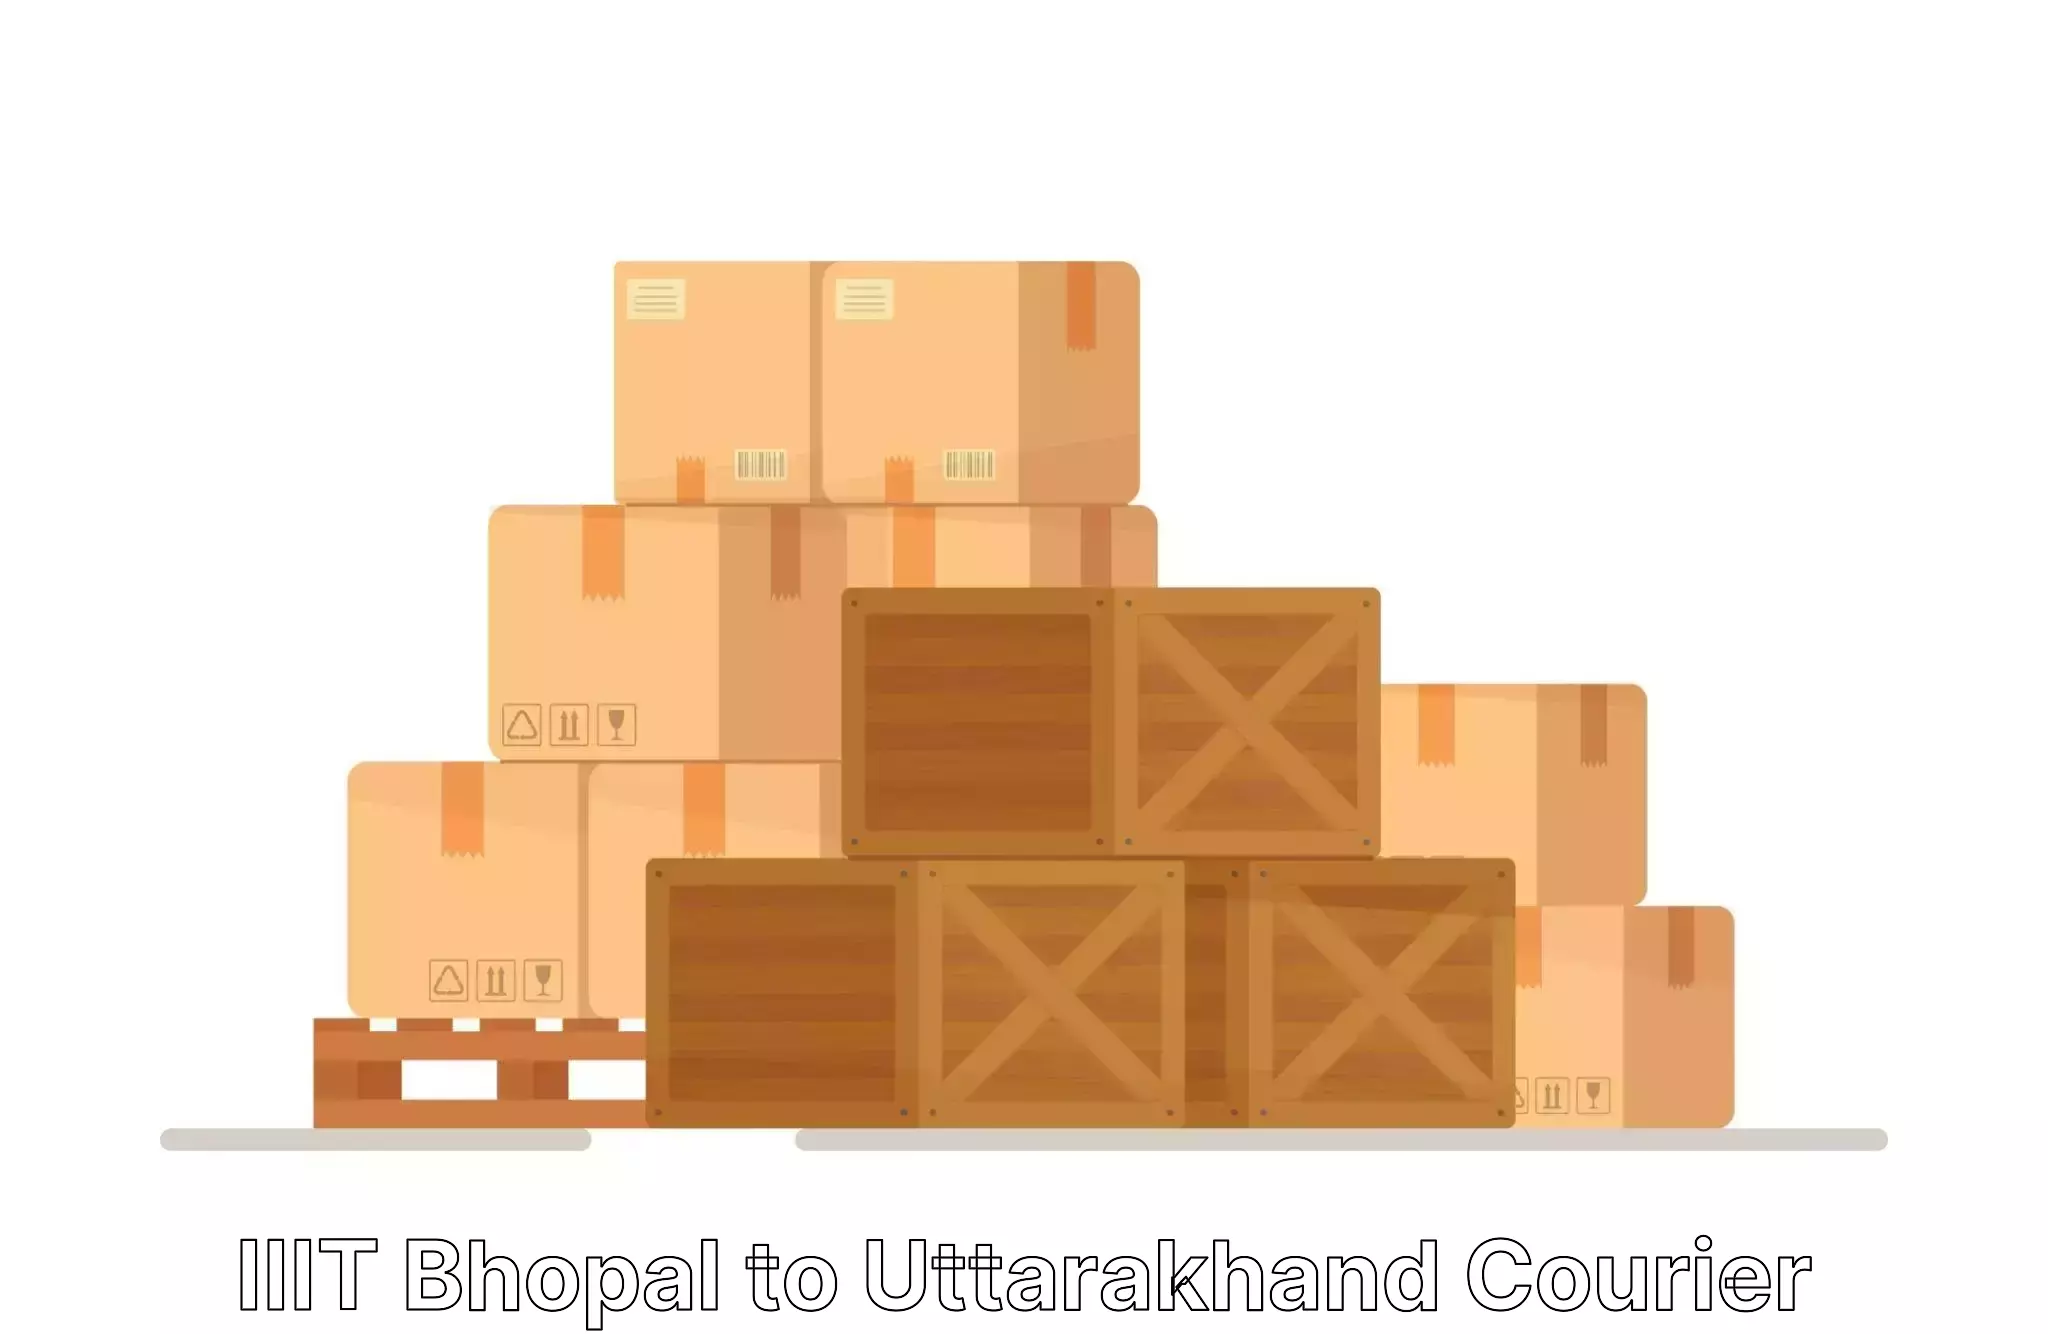 Reliable furniture transport IIIT Bhopal to Kotdwara